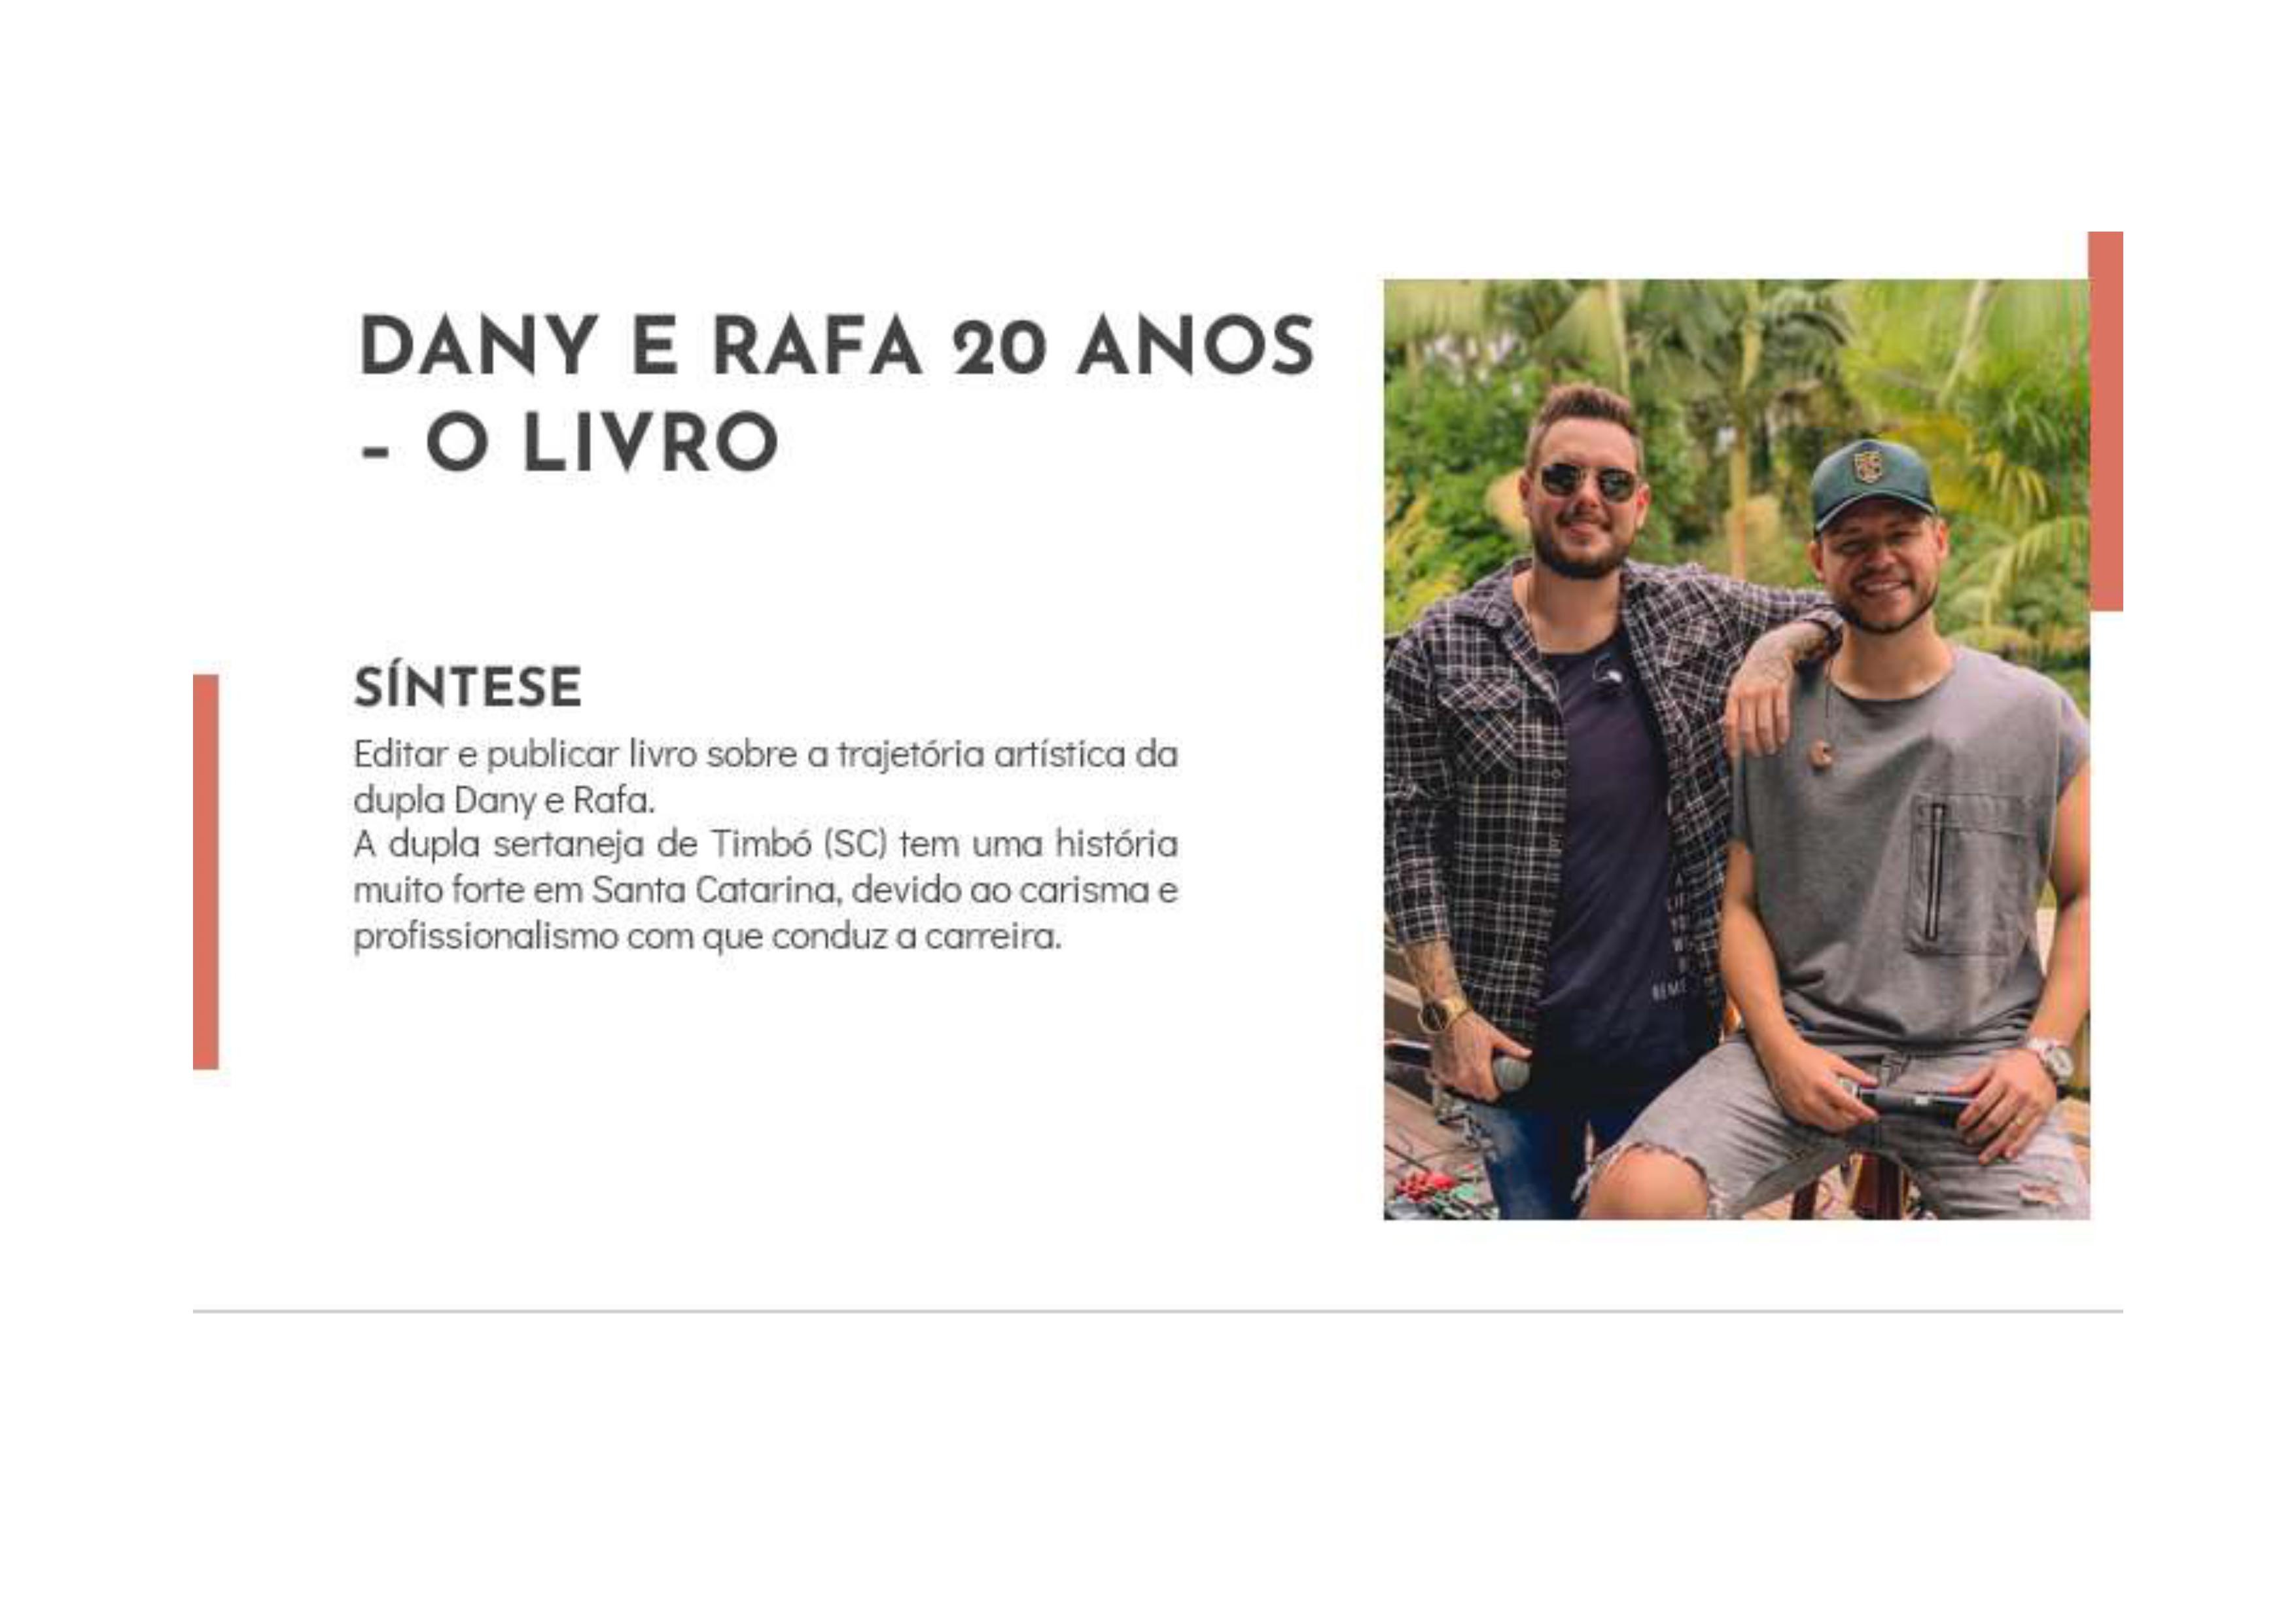 Dany E Rafa 20 Anos - O Livro